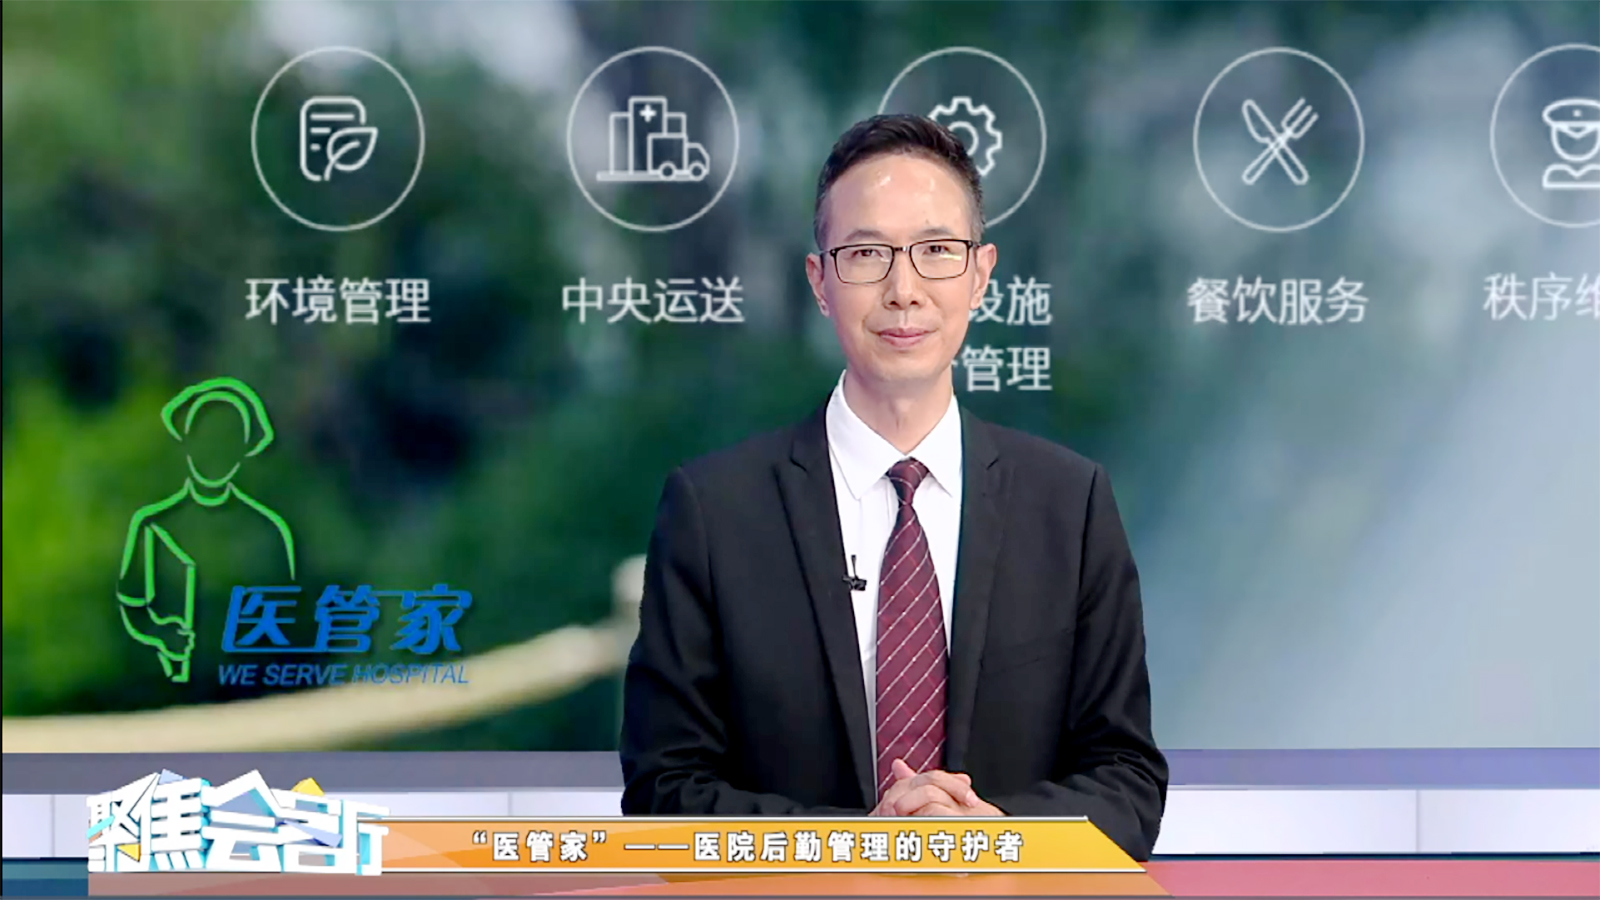 医管家总裁朱春堂做客天津电视台 《聚焦房地产》栏目